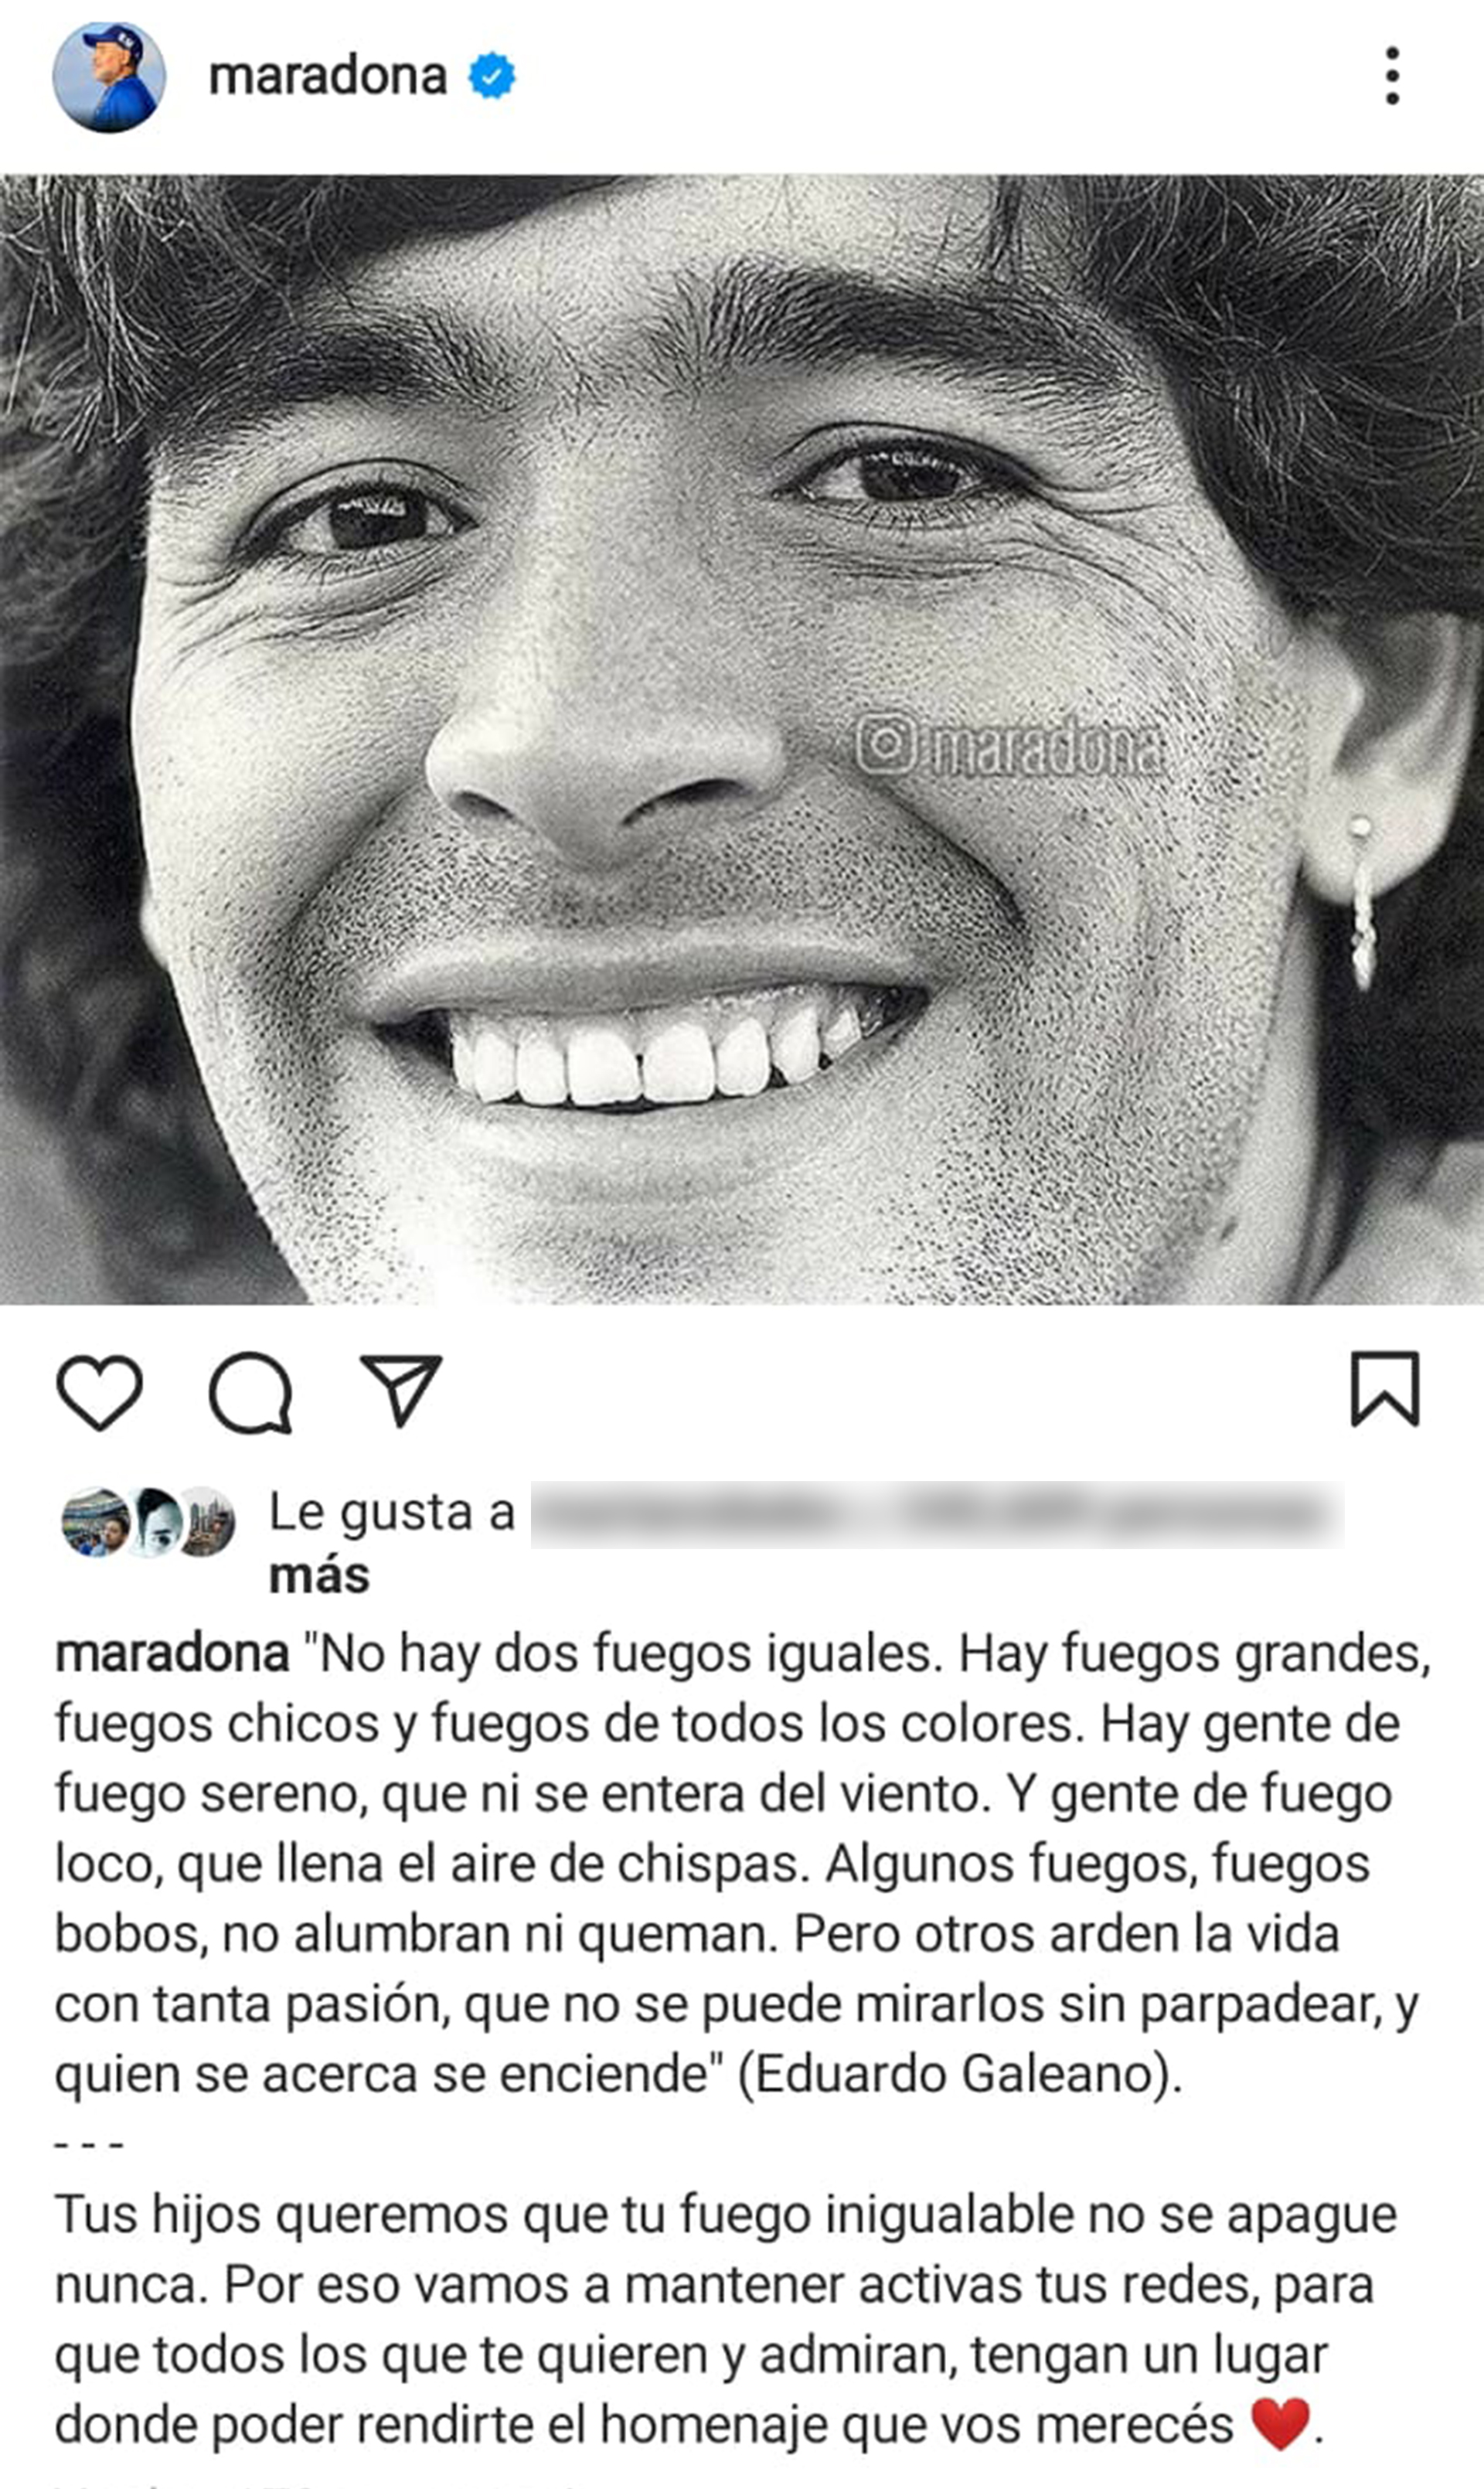 La publicación de los hijos de Maradona en las redes